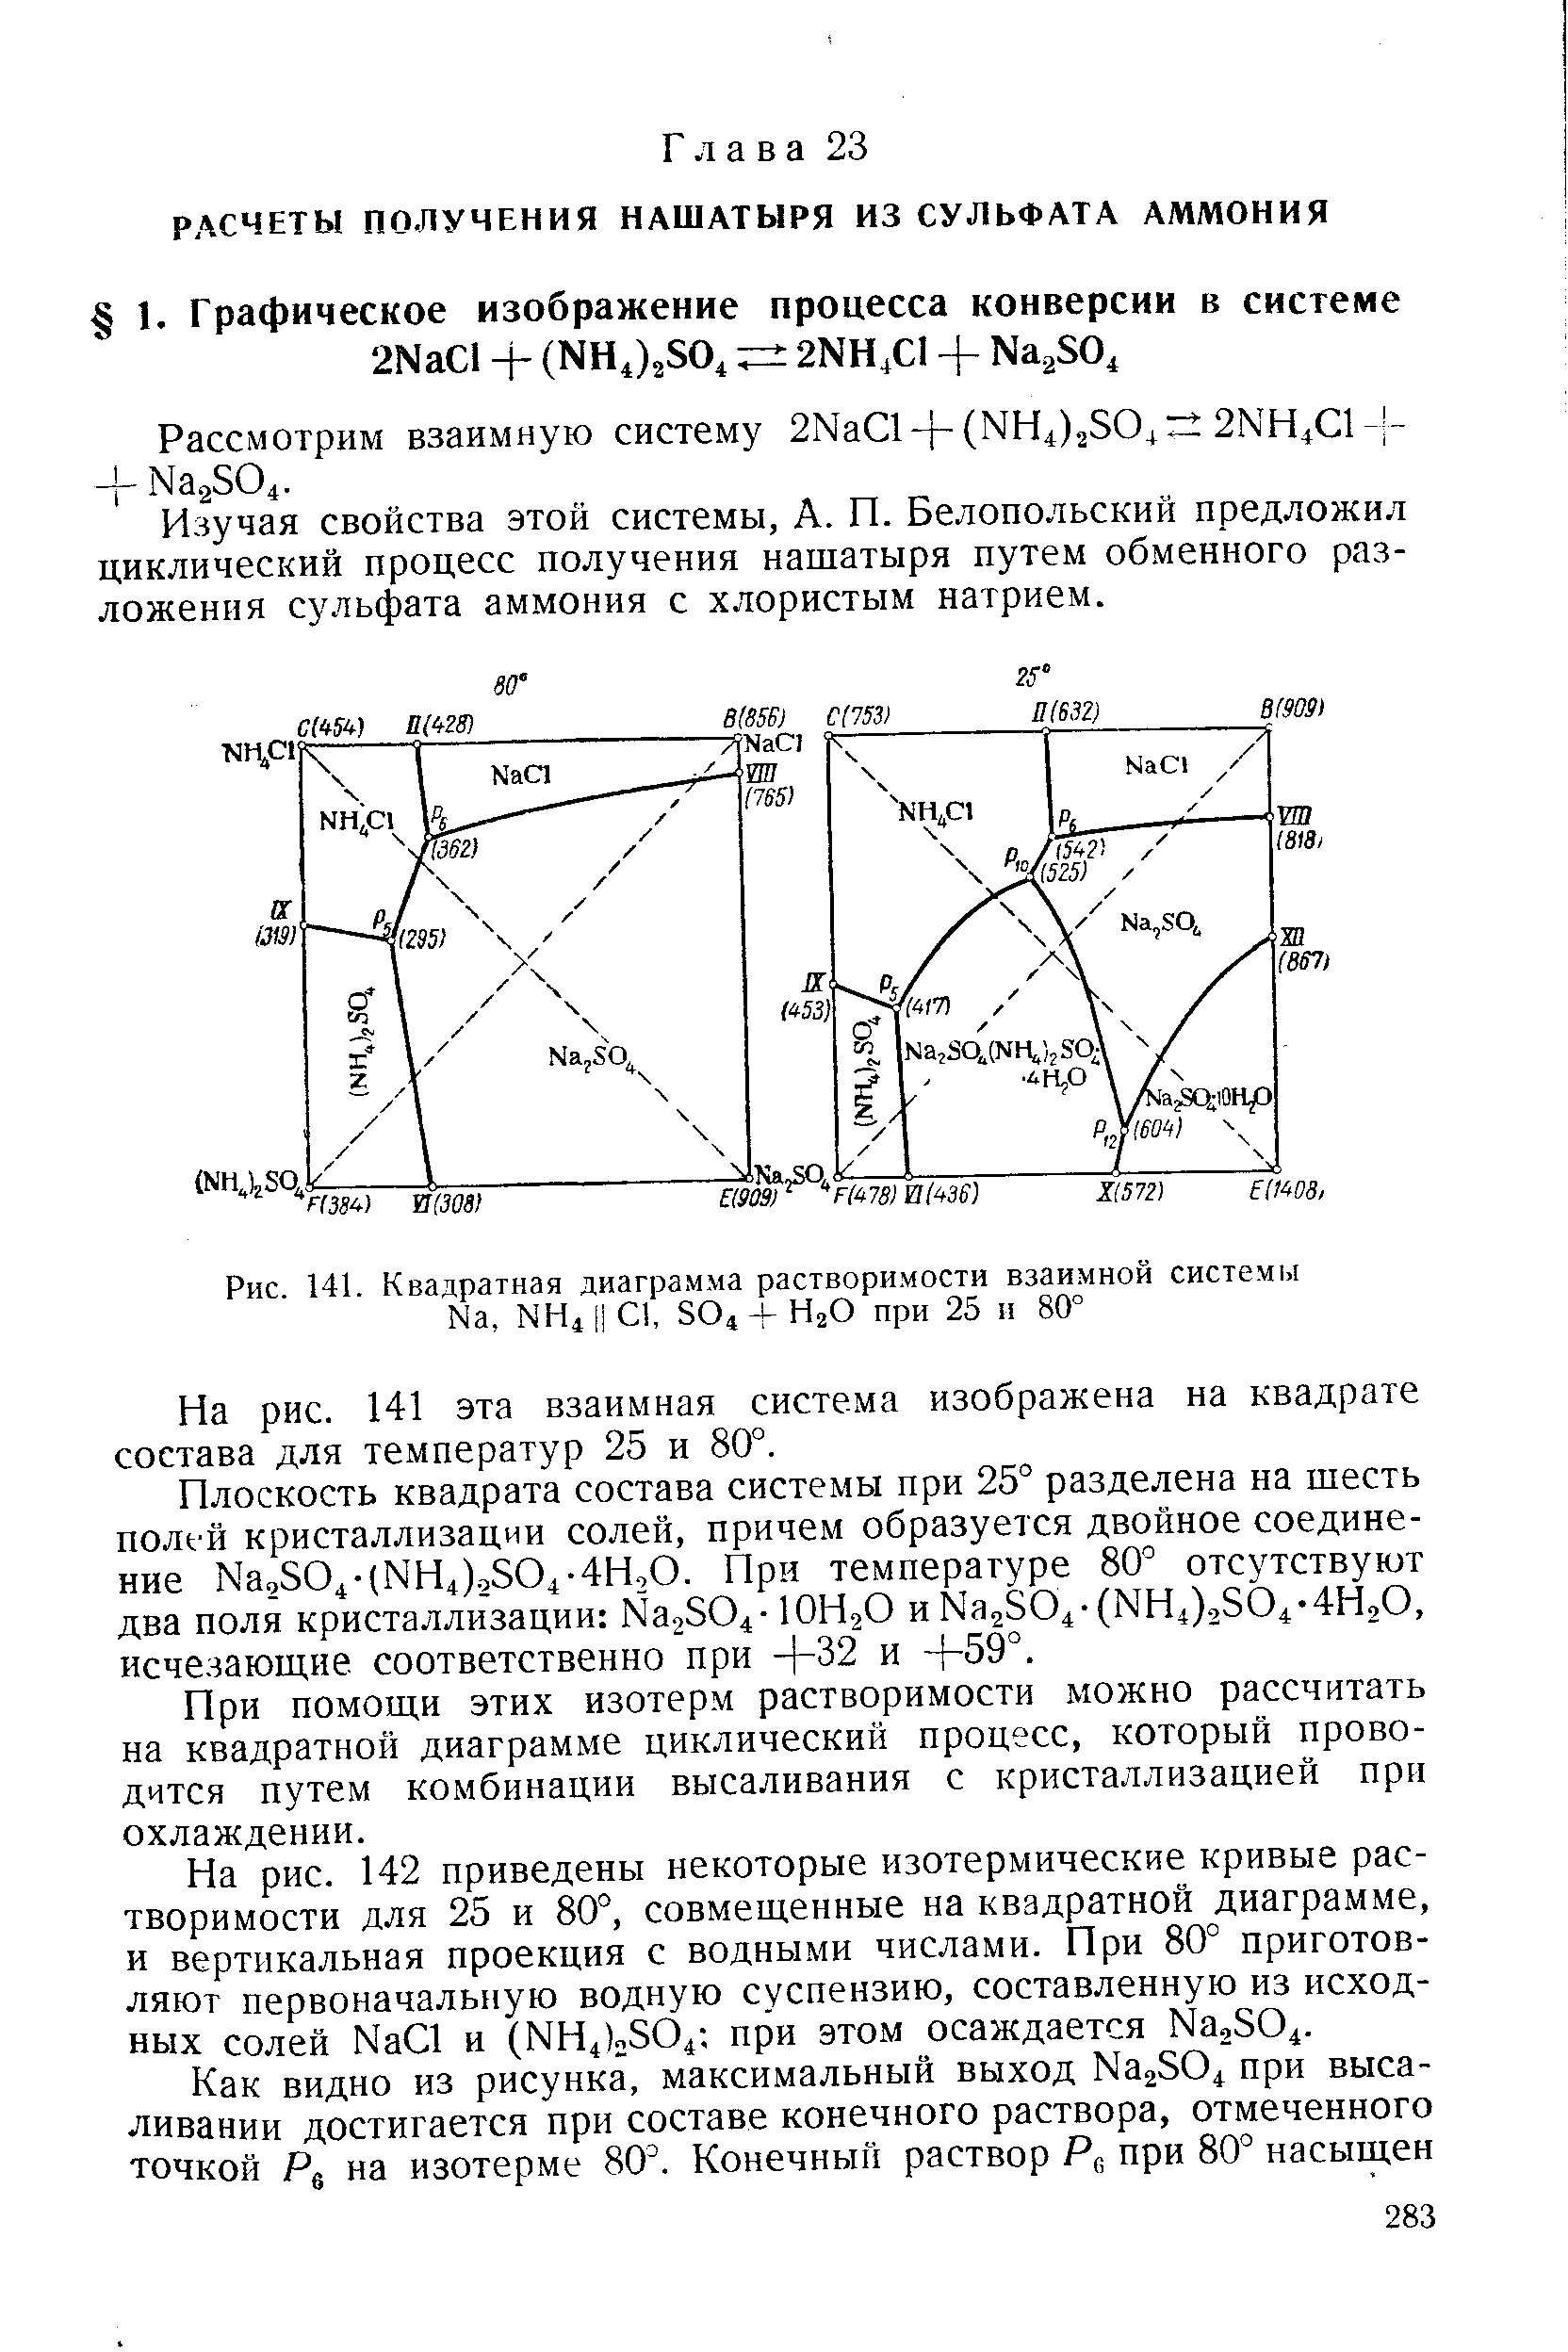 Изучая свойства этой системы, А. П. Белопольский предложил циклический процесс получения нашатыря путем обменного разложения сульфата аммония с хлористым натрием.